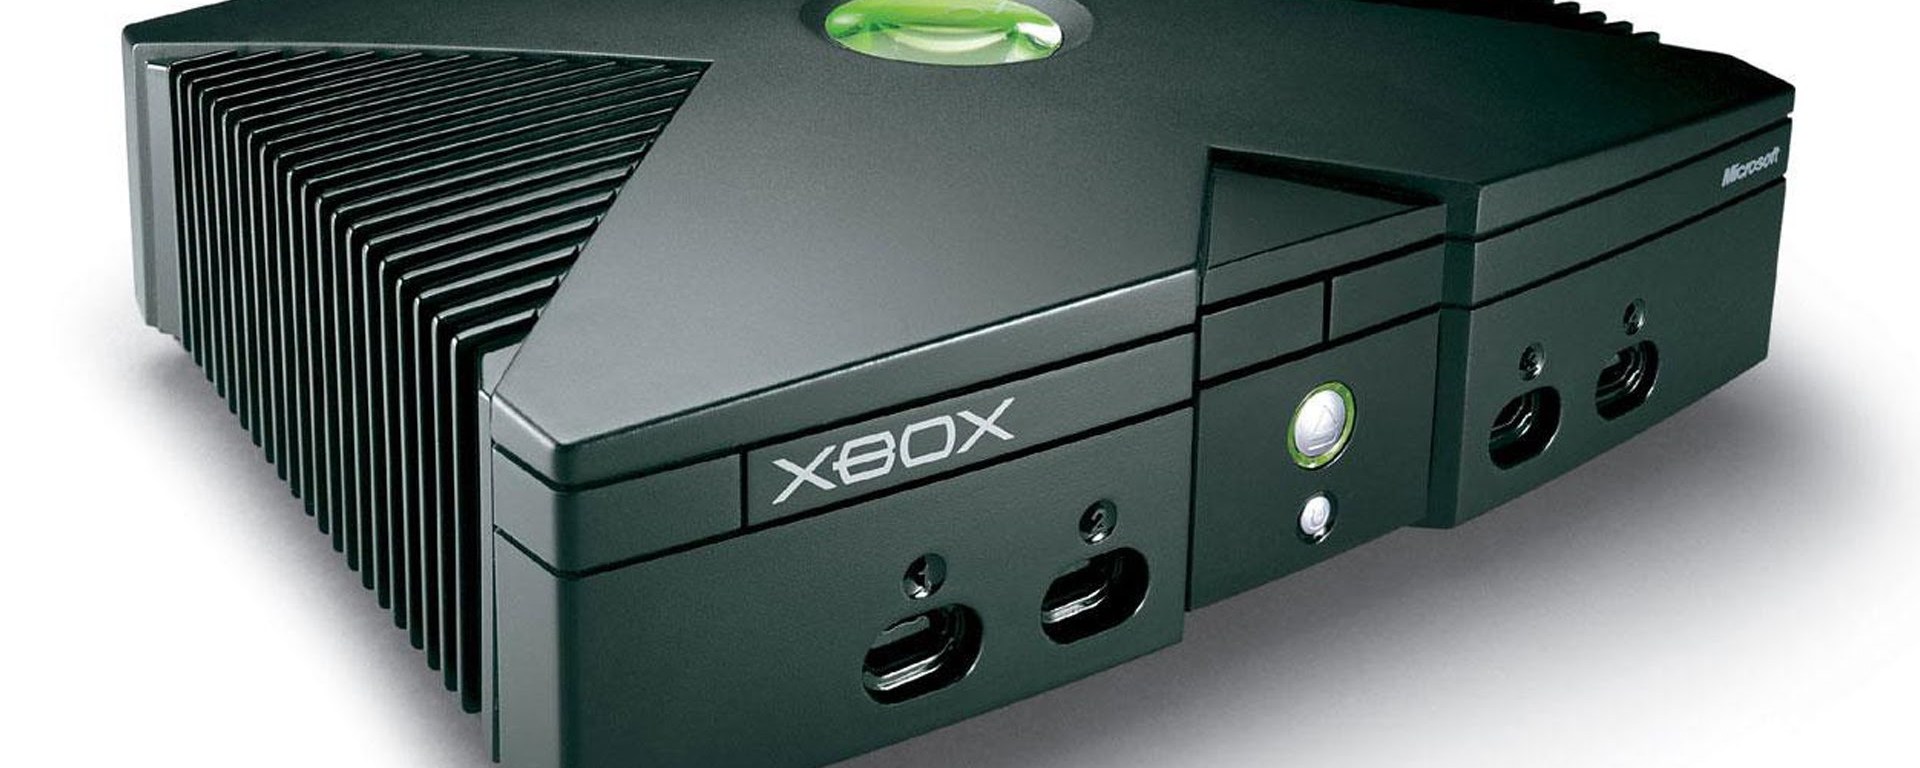 Grandes noticias respecto a la retrocomaptibilidad en la Xbox One están en camino.